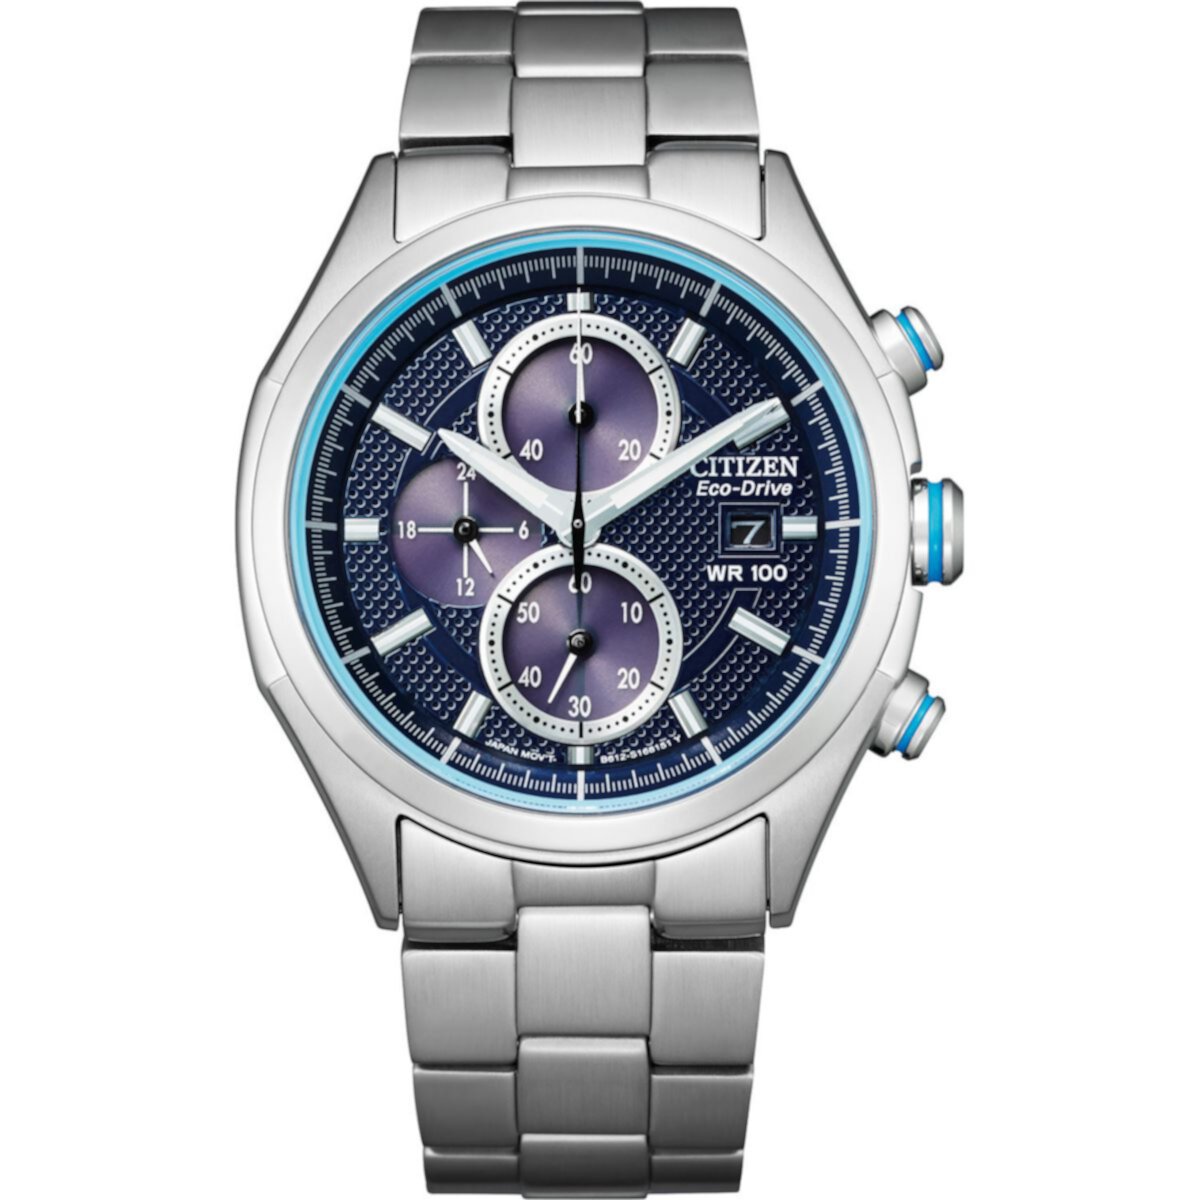 Мужские часы с хронографом Citizen Eco-Drive с синим циферблатом Citizen